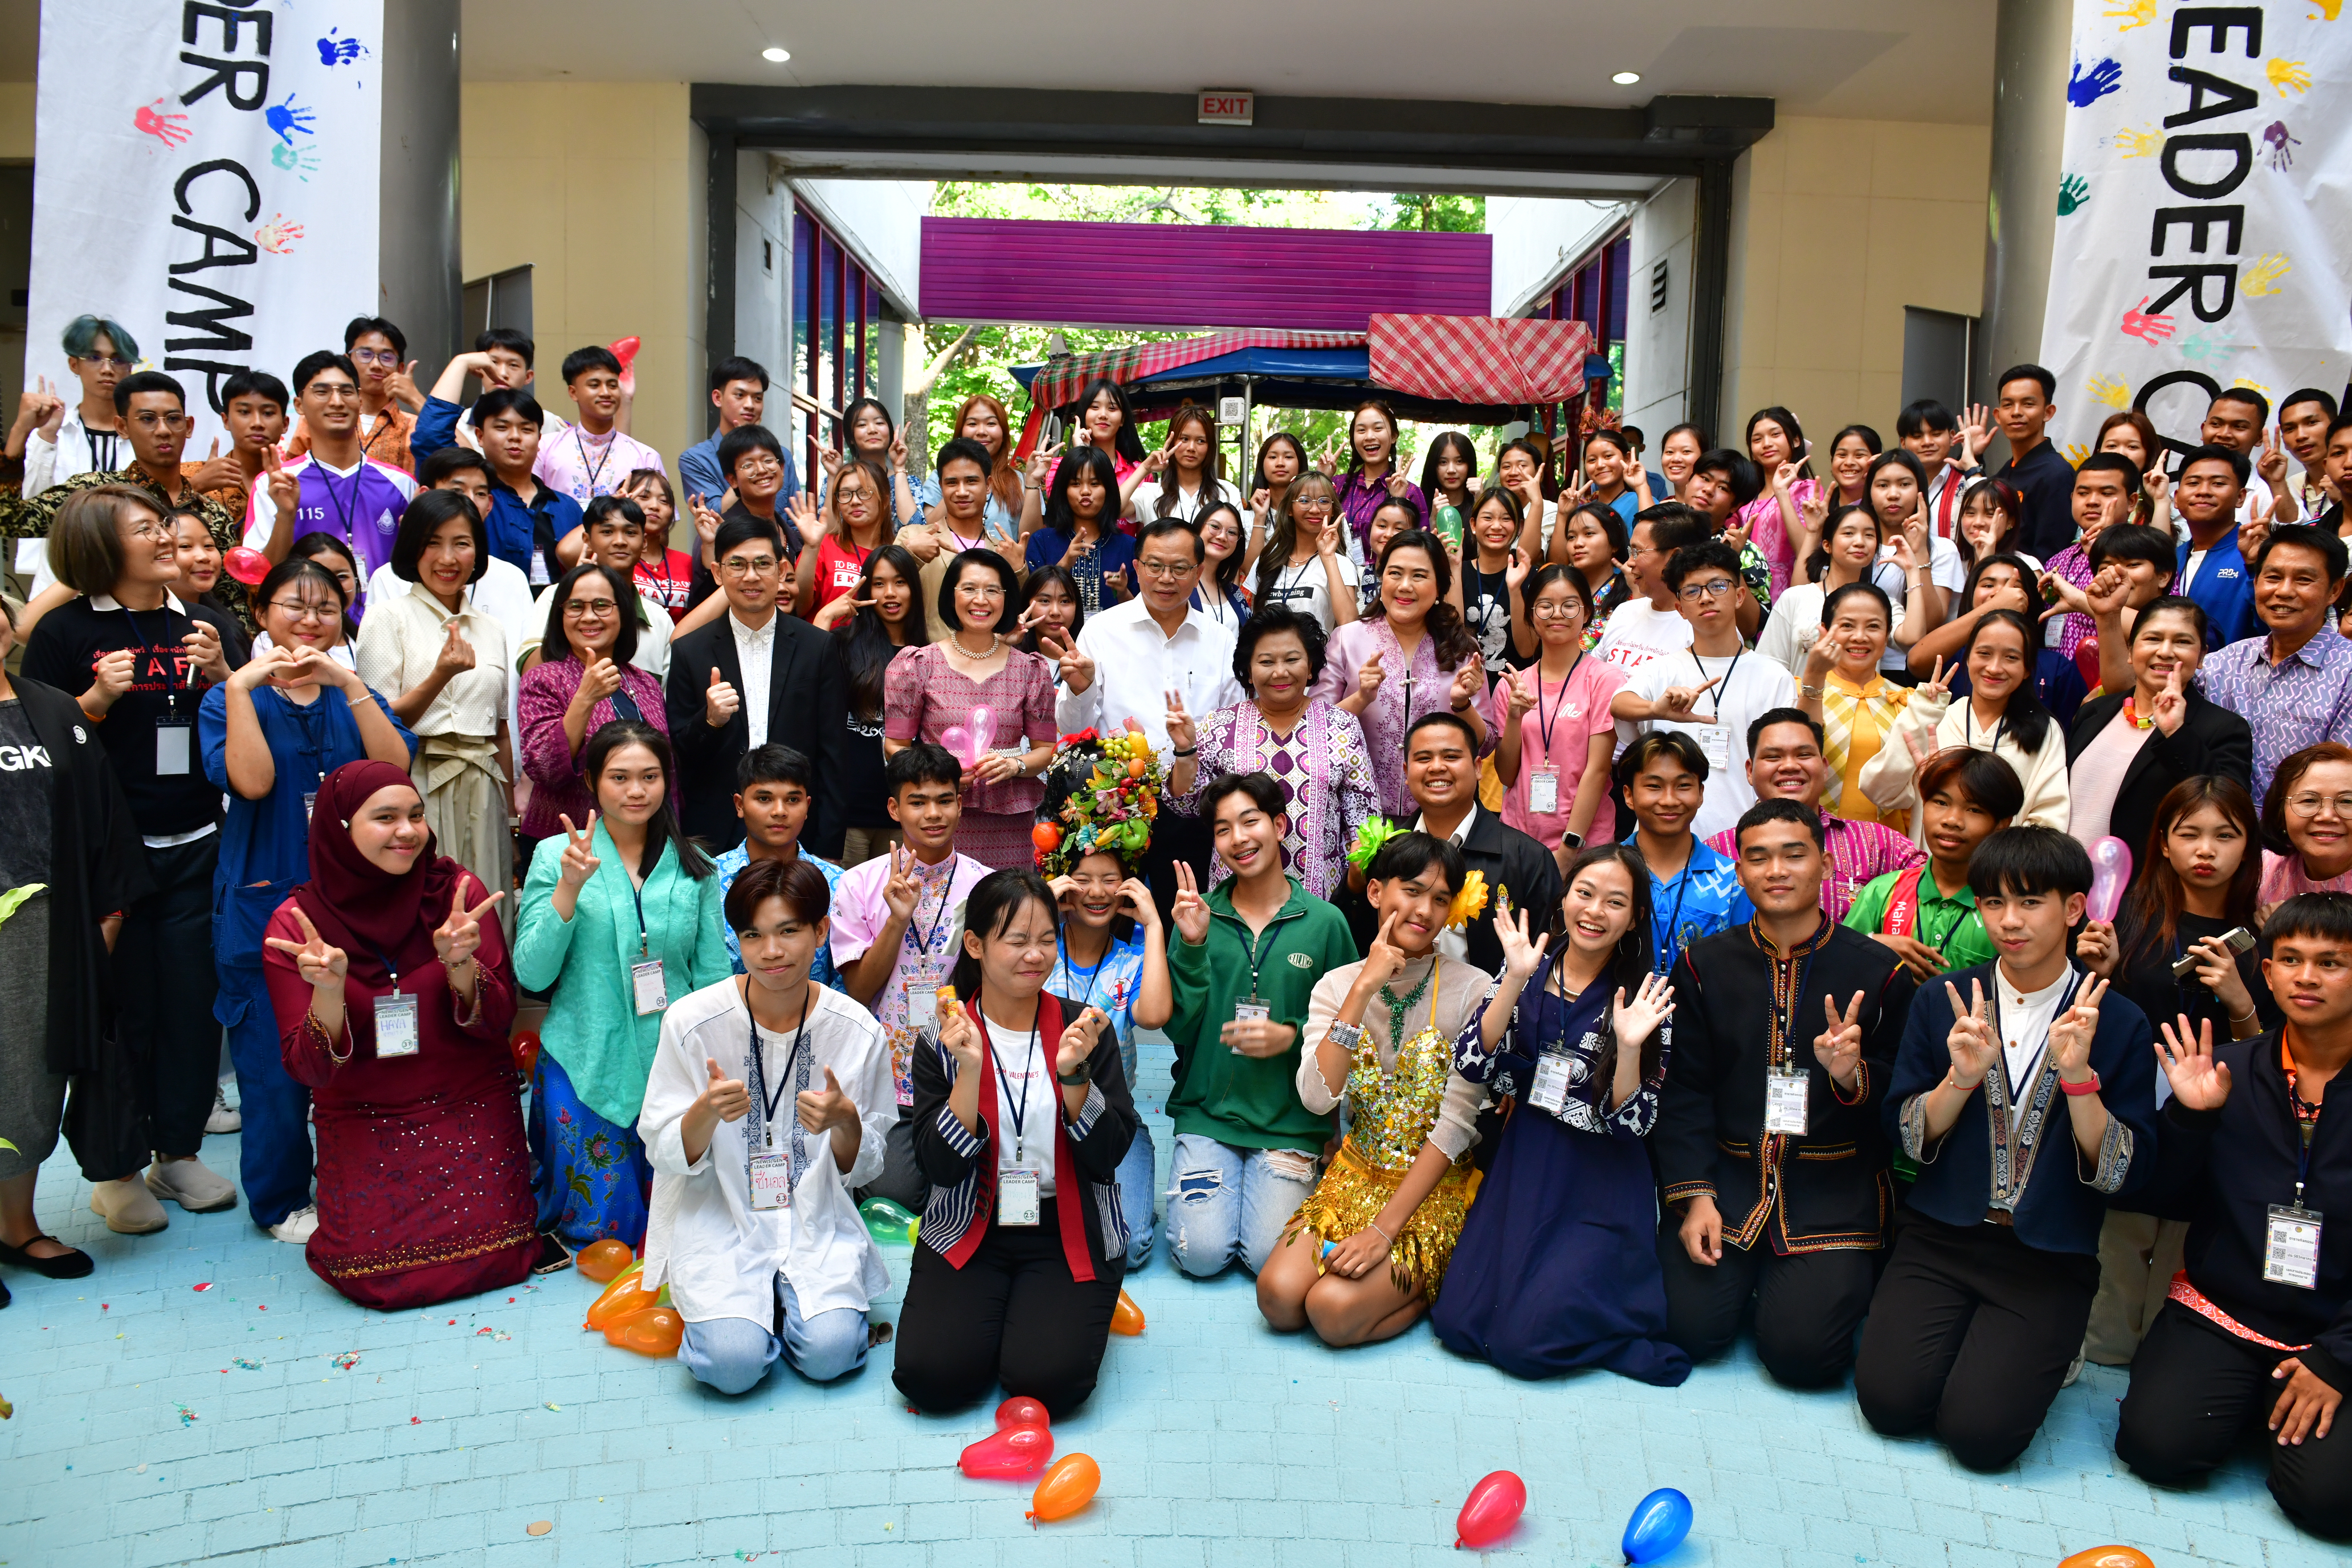 ร่วมสร้างสังคมไทยที่มีคุณภาพด้วยการสื่อสารของคนรุ่นใหม่